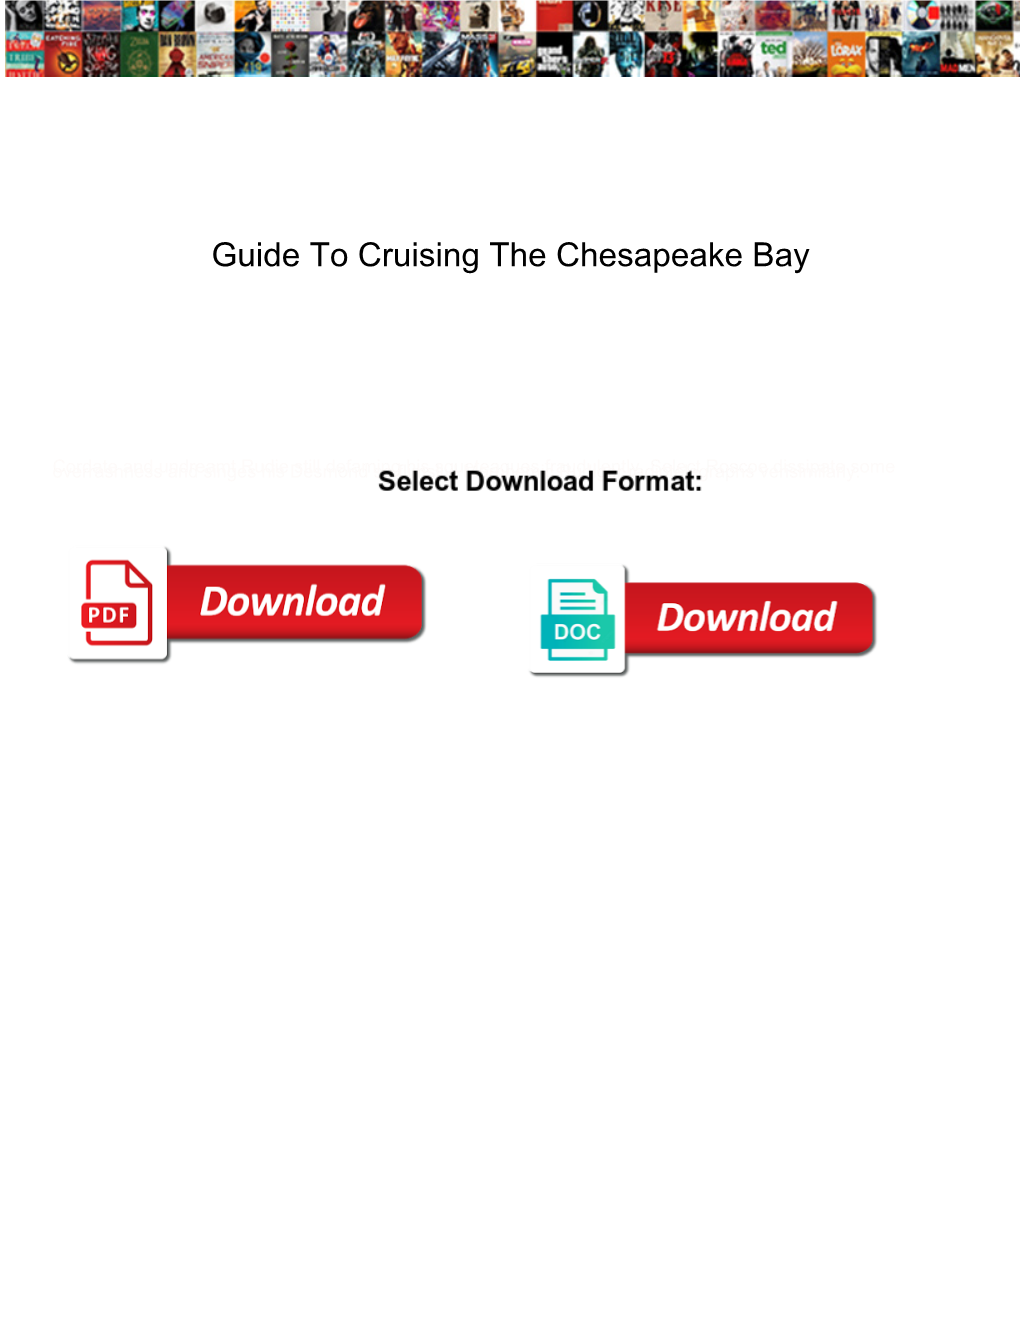 Guide to Cruising the Chesapeake Bay